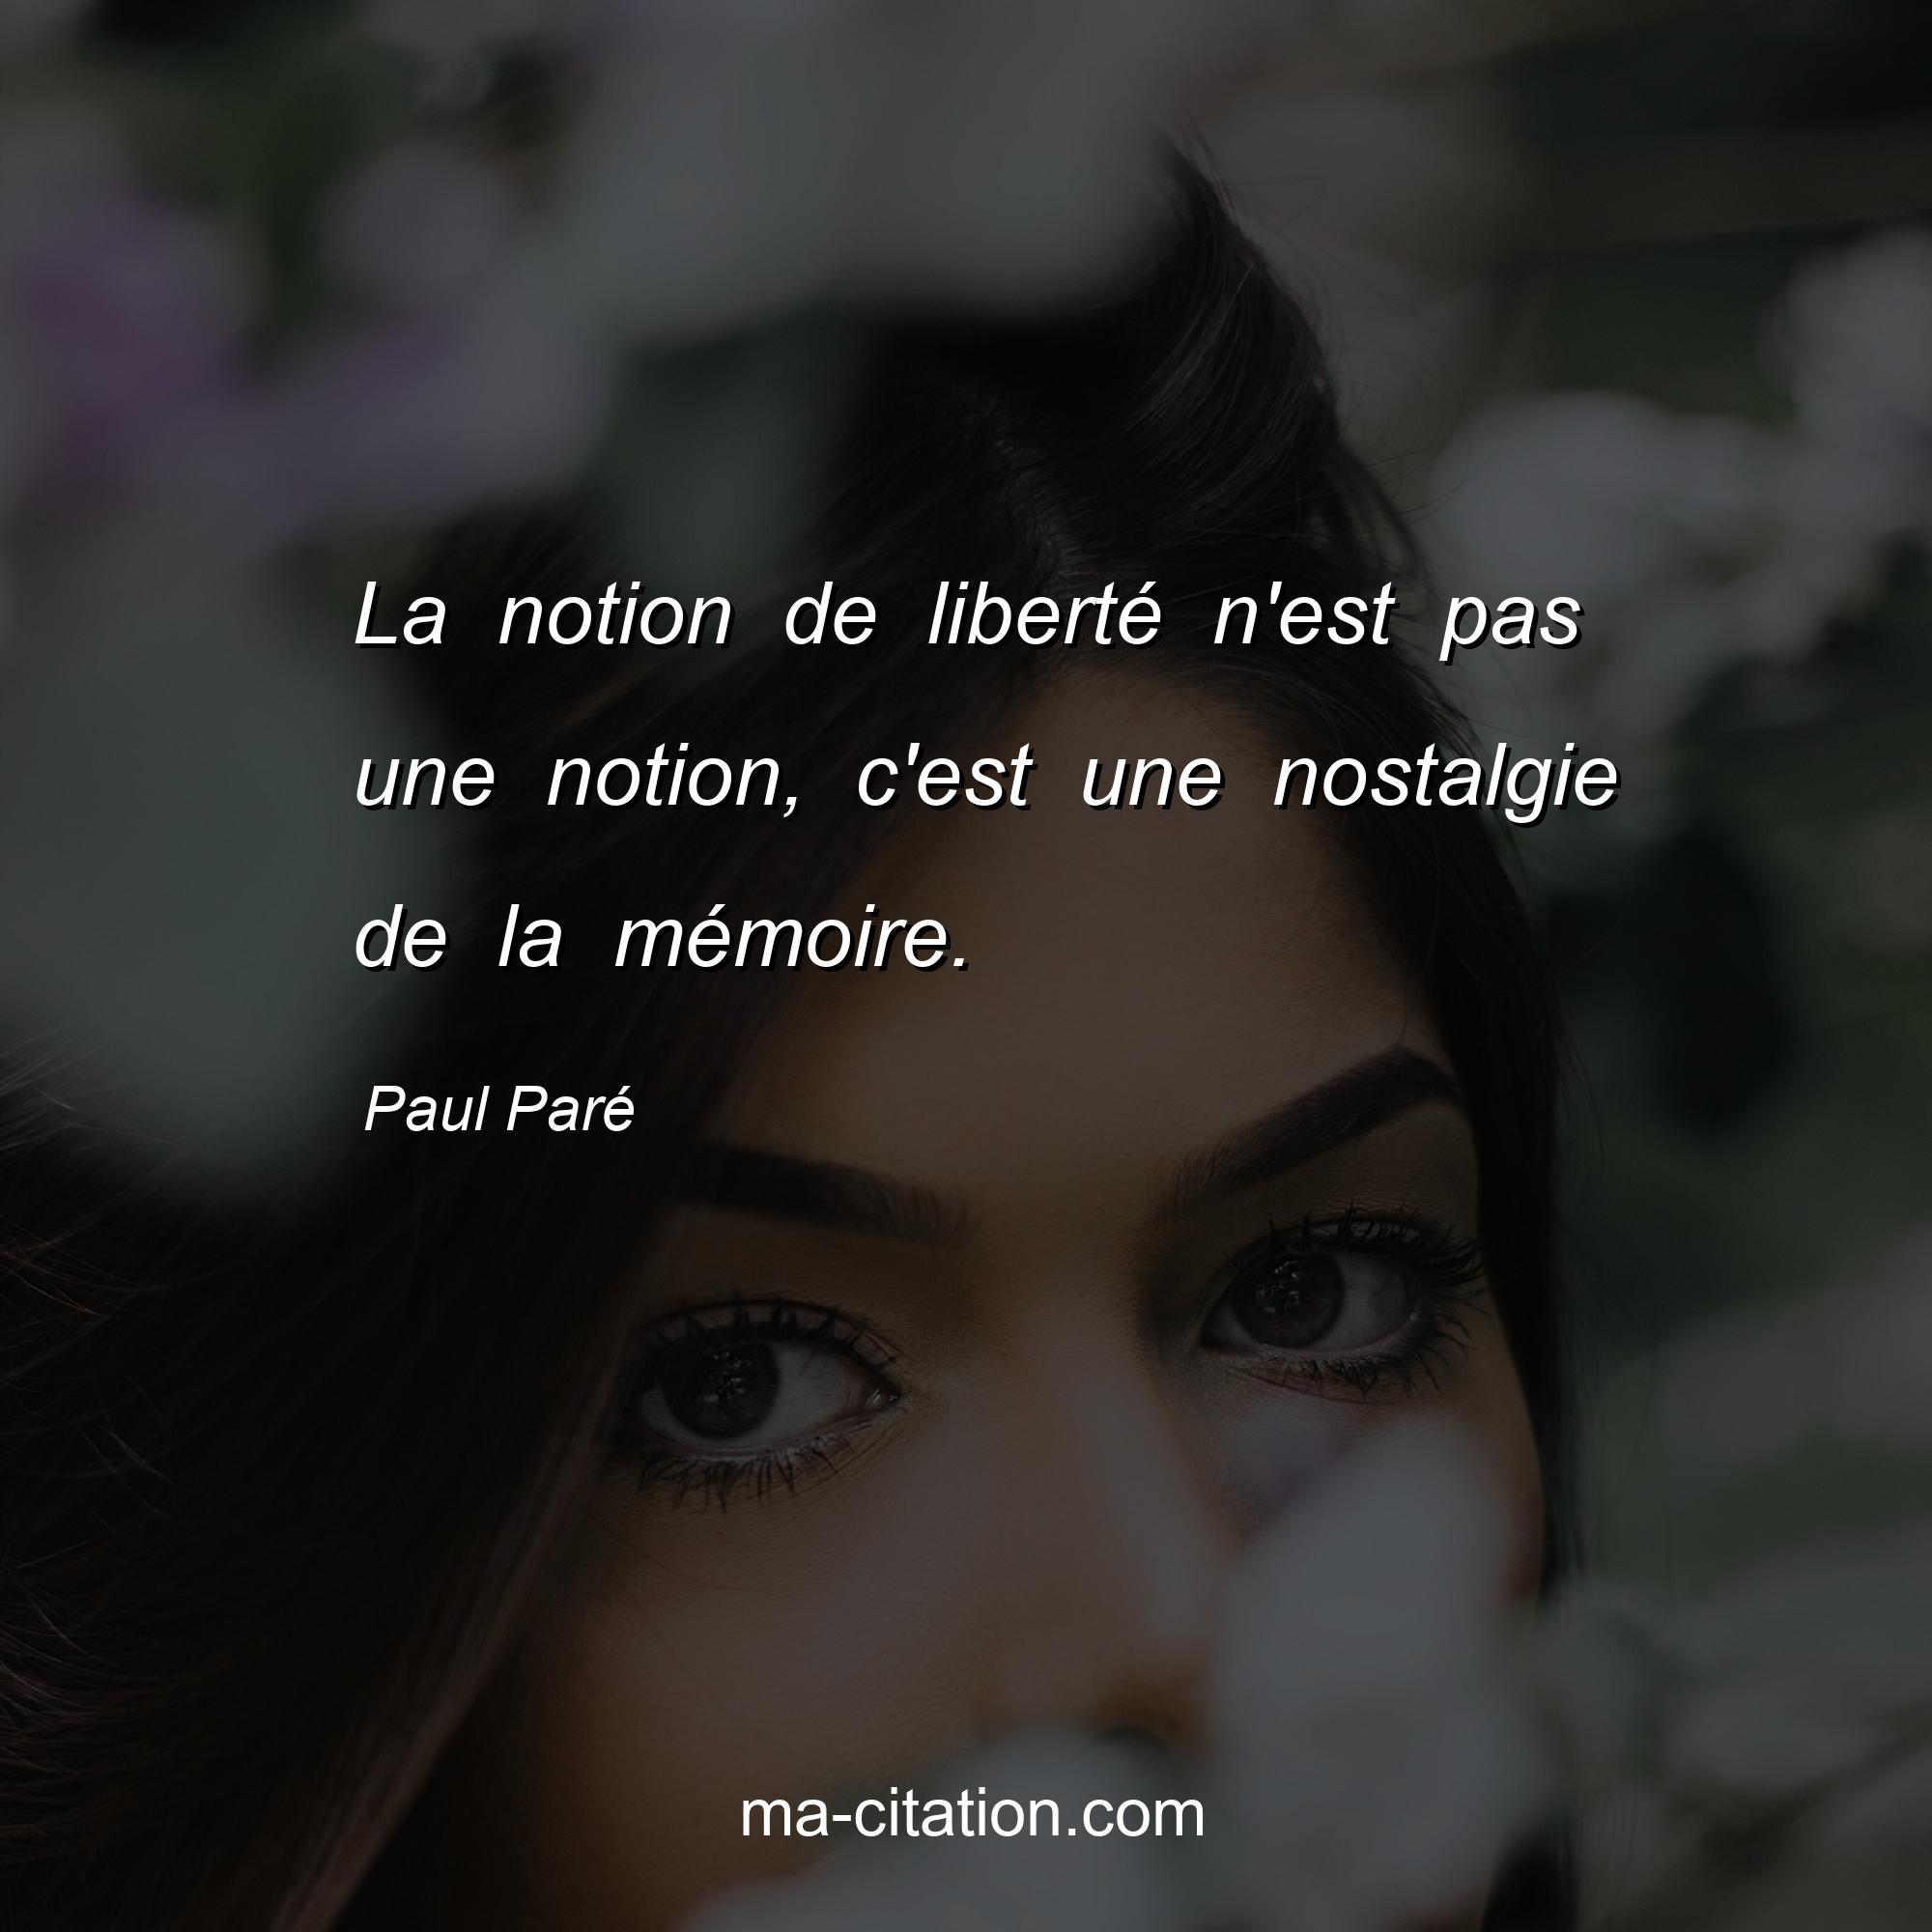 Paul Paré : La notion de liberté n'est pas une notion, c'est une nostalgie de la mémoire.